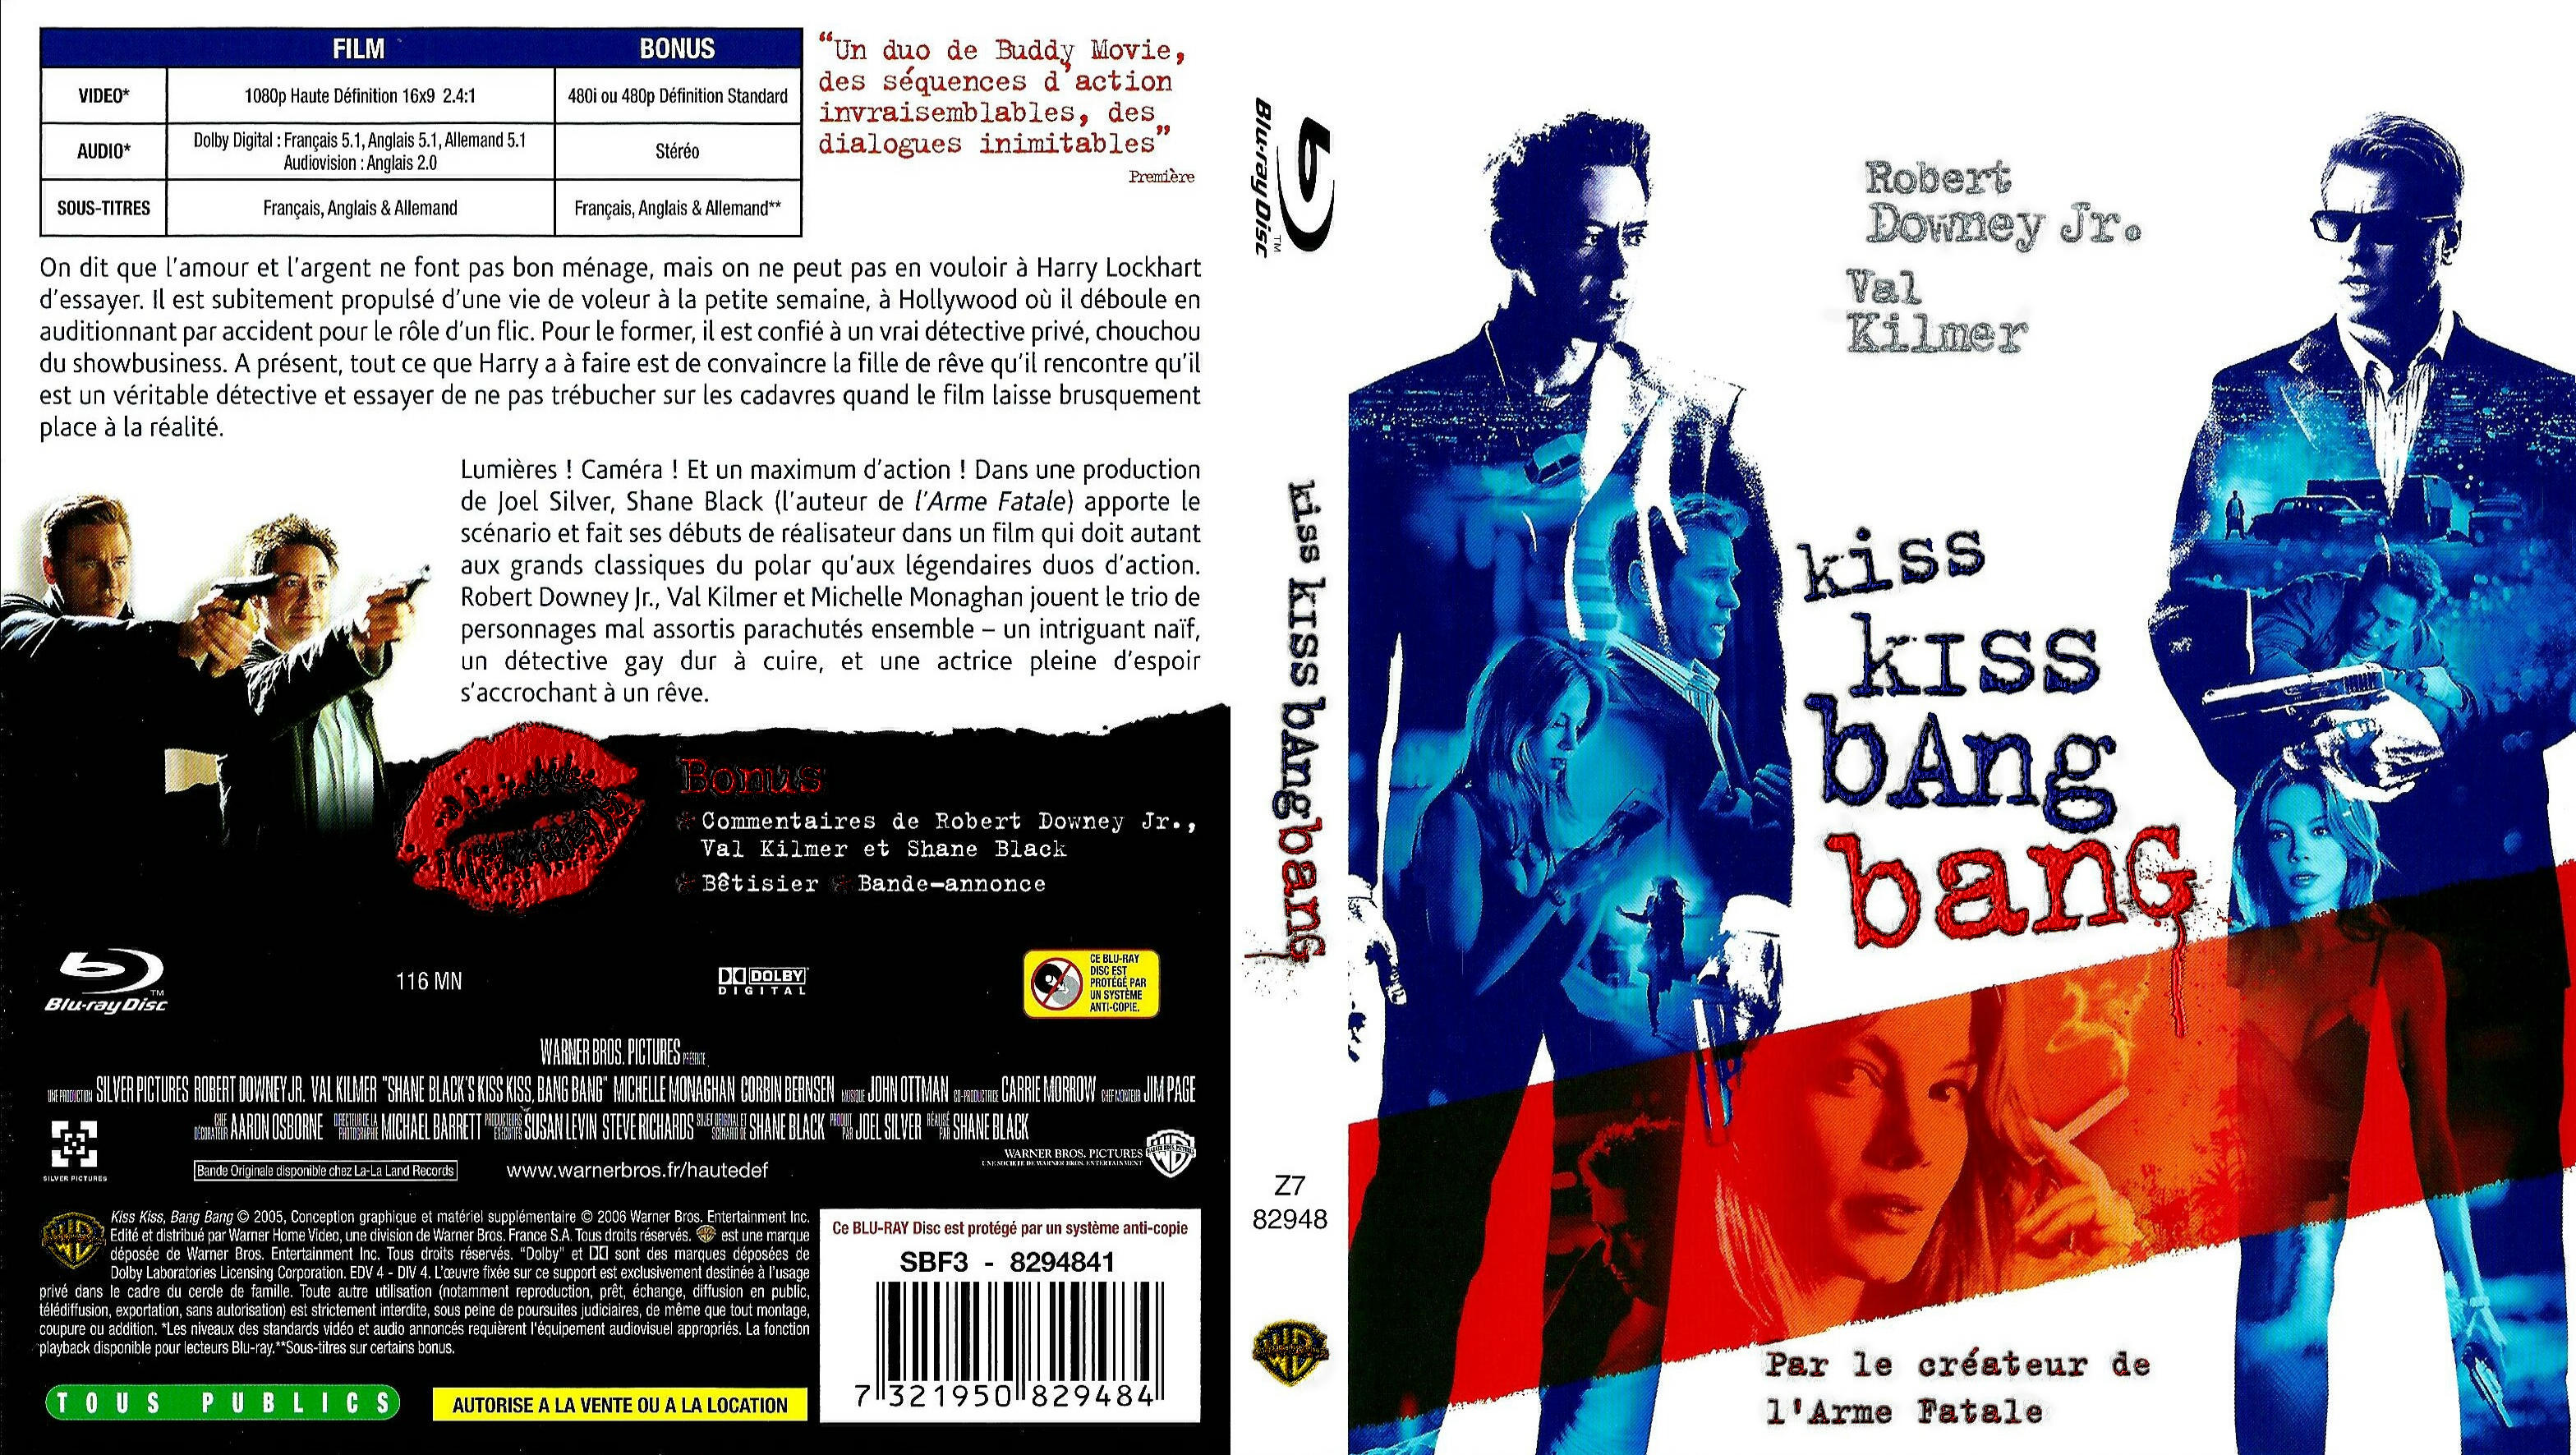 Jaquette DVD de Série noire (BLU-RAY) - Cinéma Passion